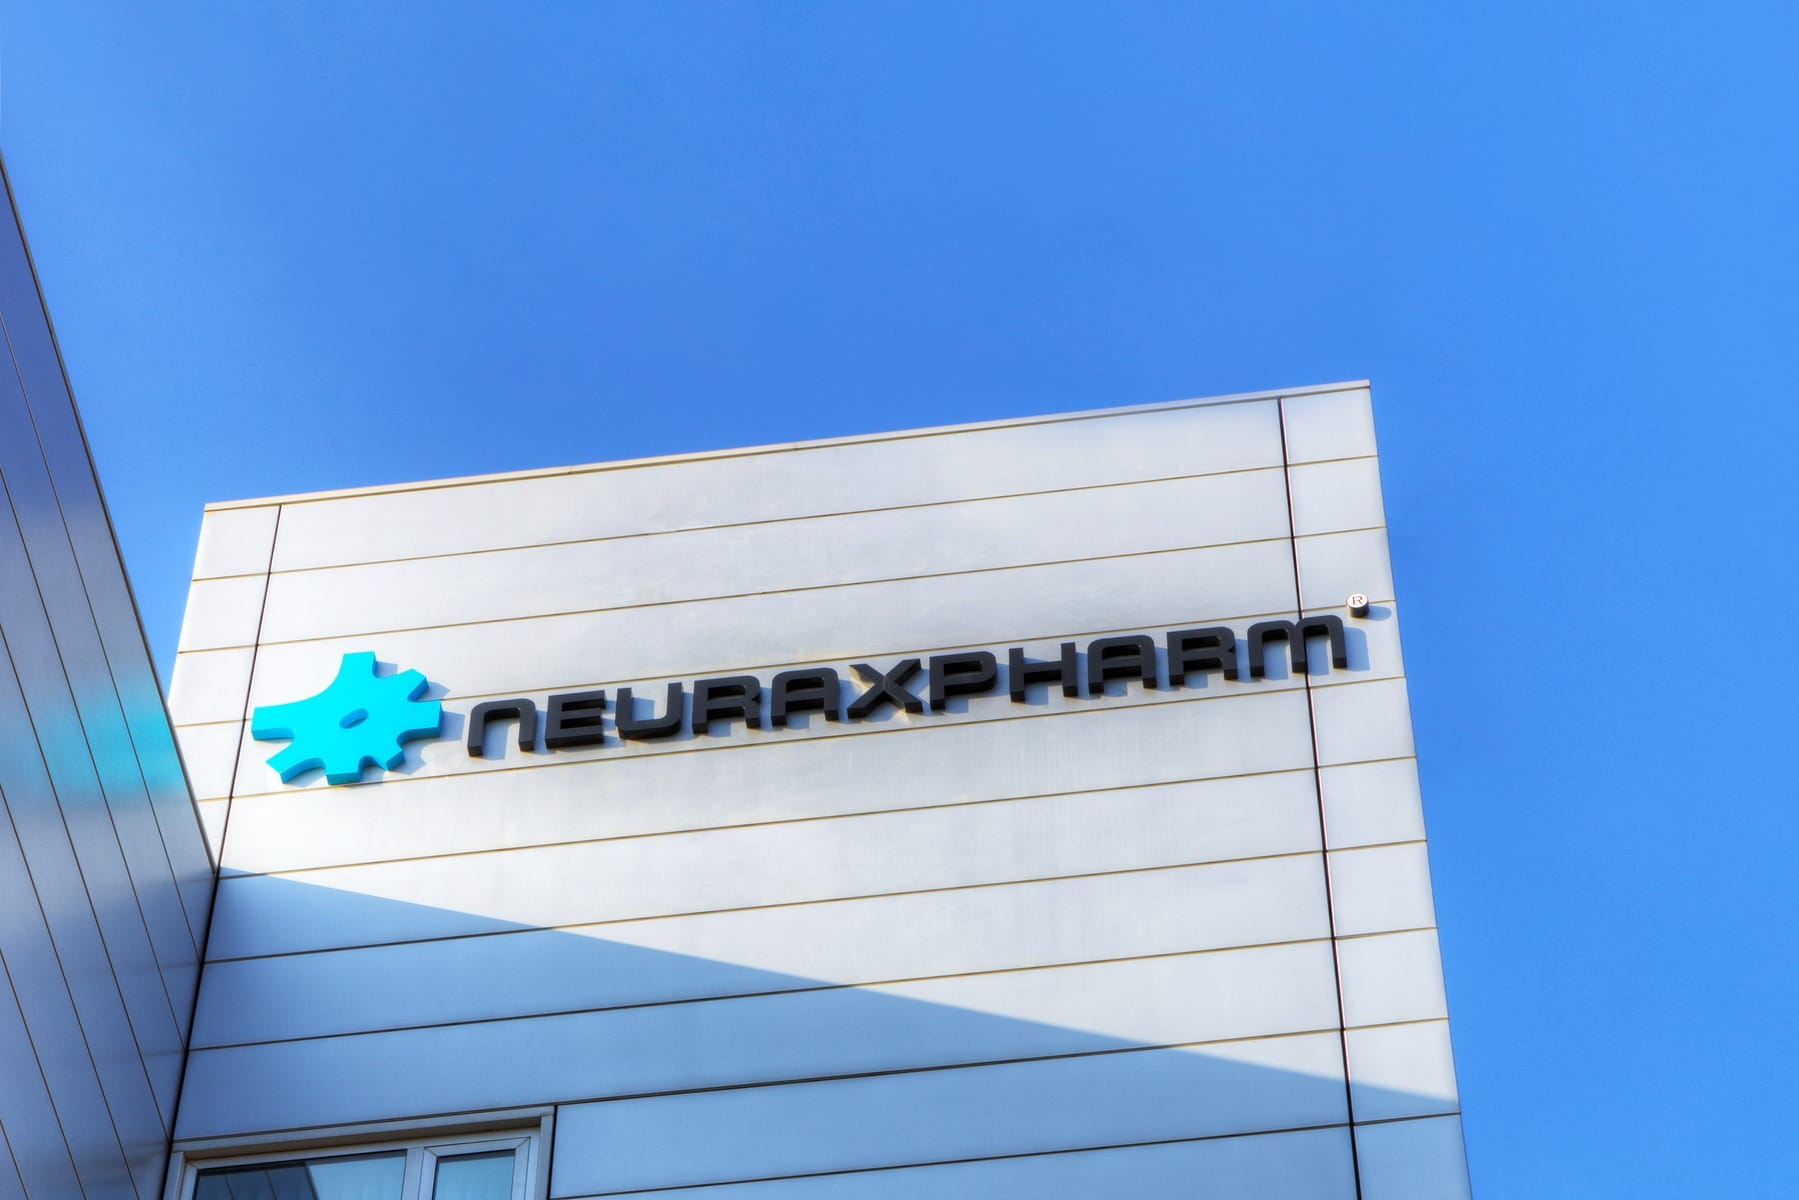 Neuraxpharm logo on a building